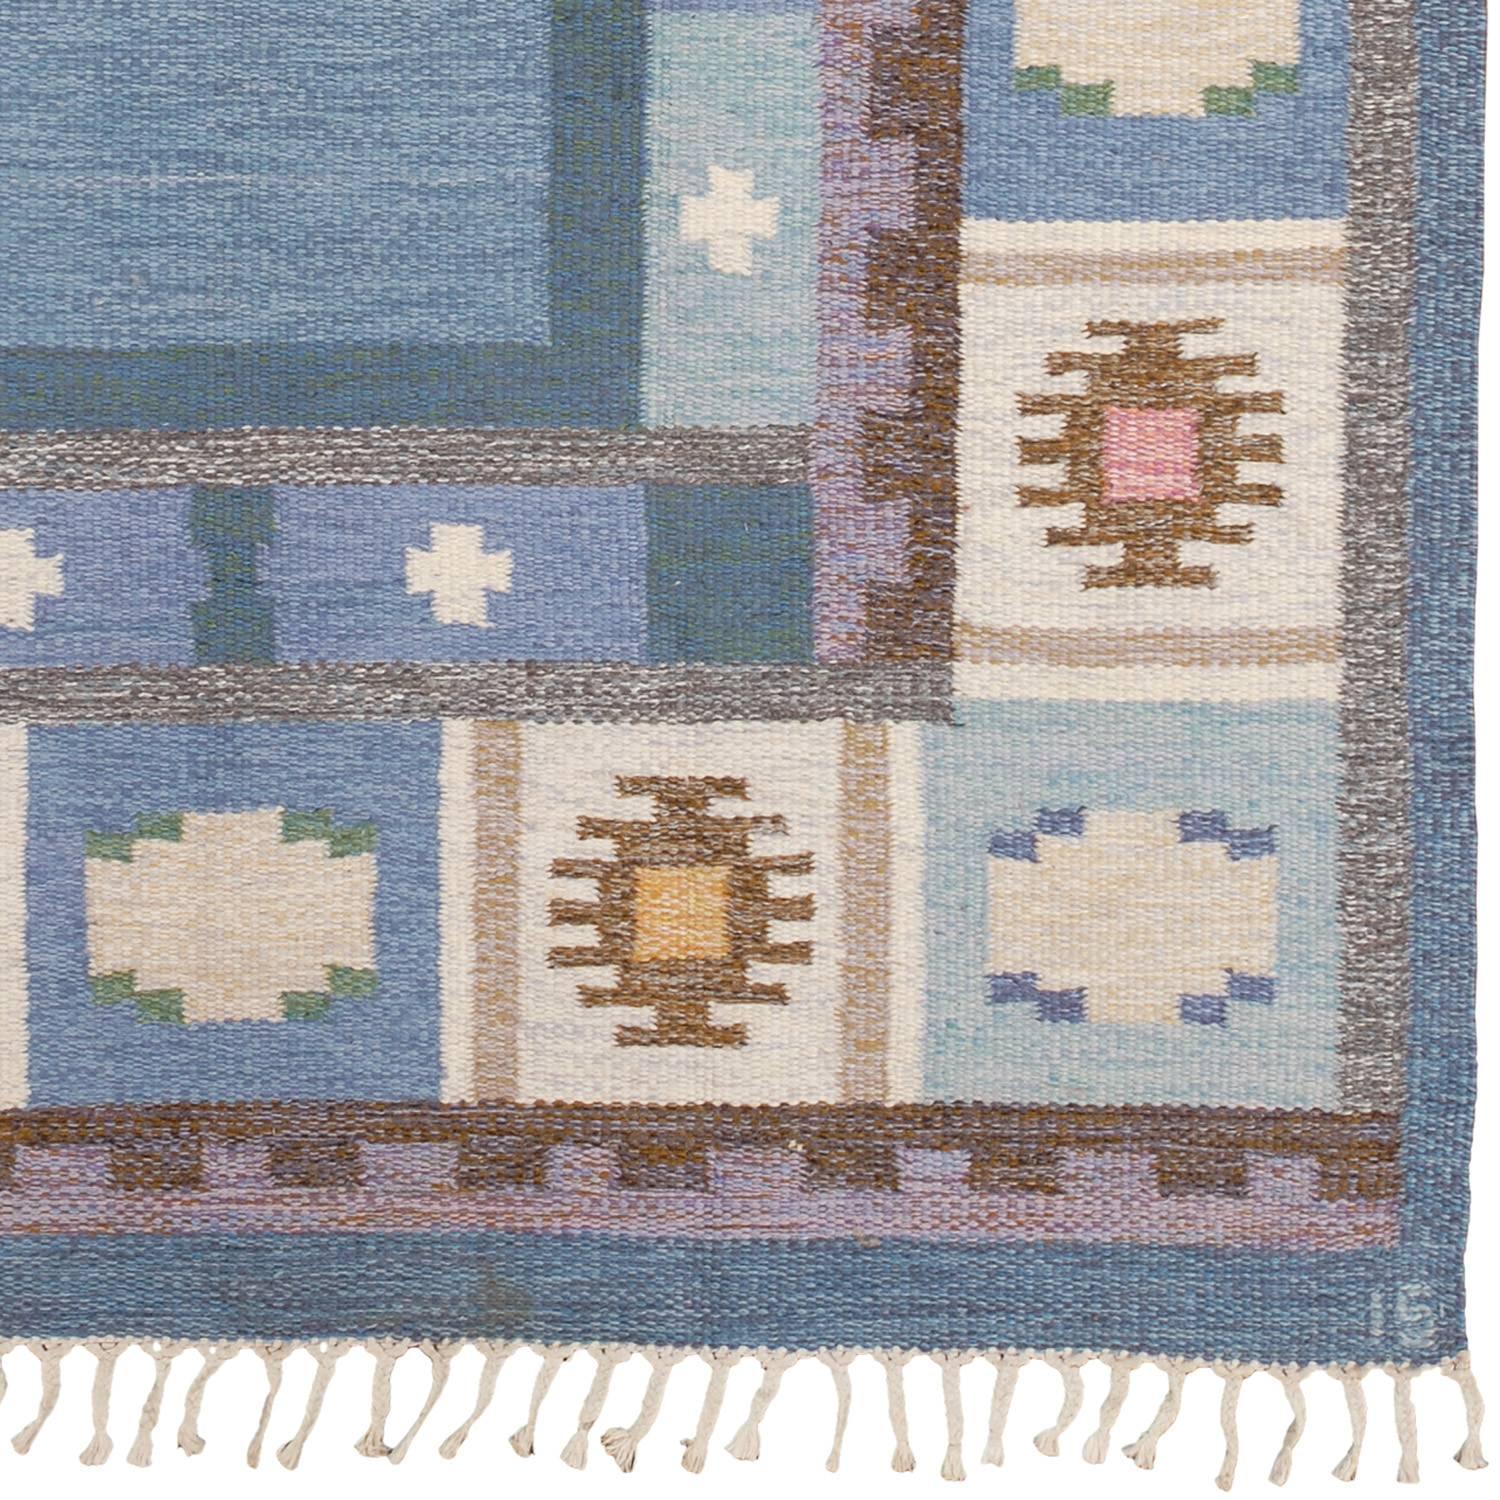 Scandinavian Modern 20th Century Swedish Flat-Weave Carpet by Ingegerd Silow